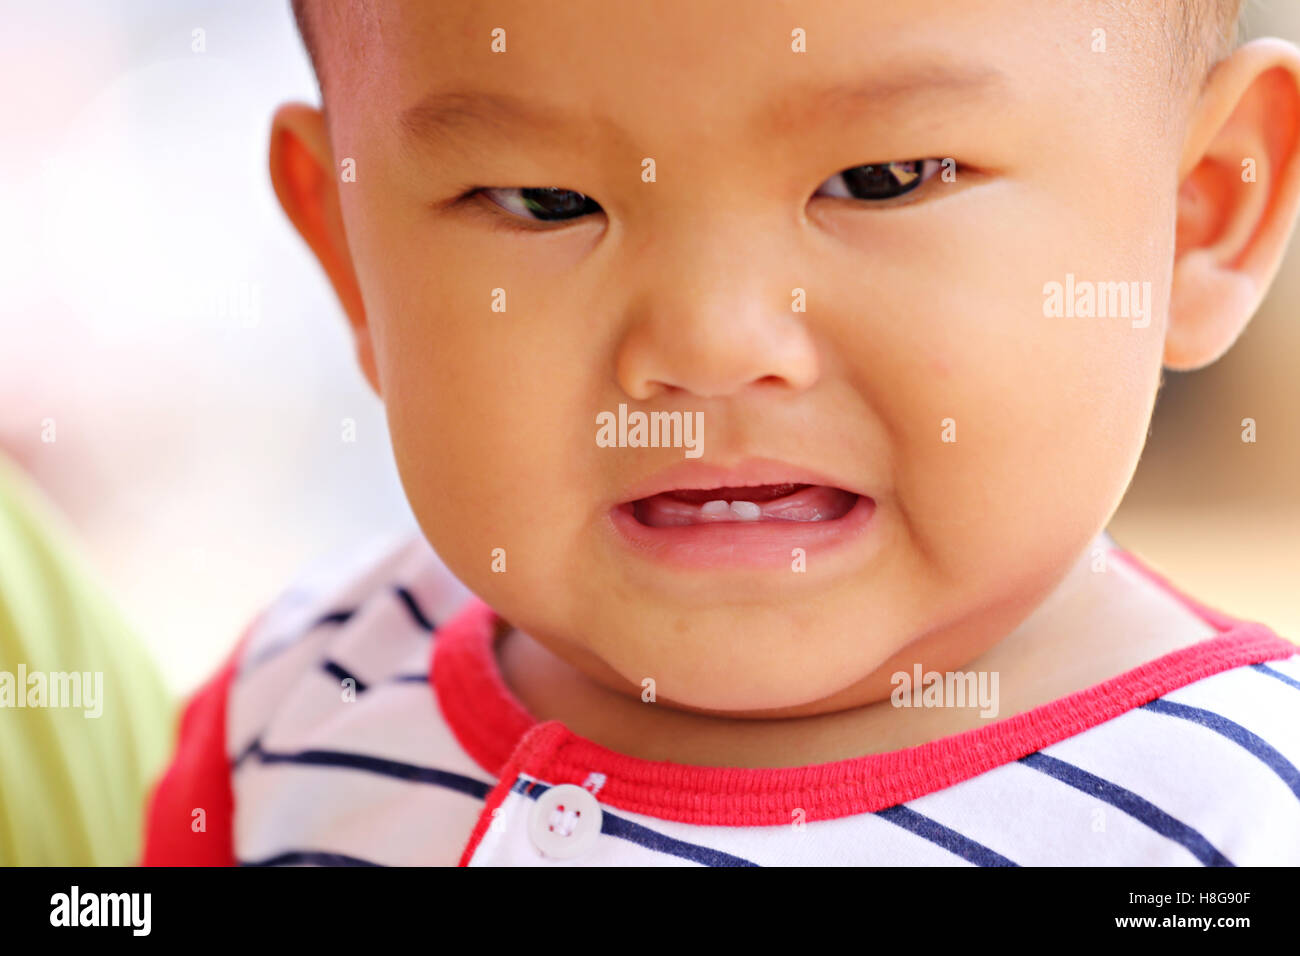 Asiatisches Baby Kleinkind und Kinderkrankheiten in Lächeln mit glücklich, Konzept der Gesundheit und Entwicklung der Kinder haben. Stockfoto